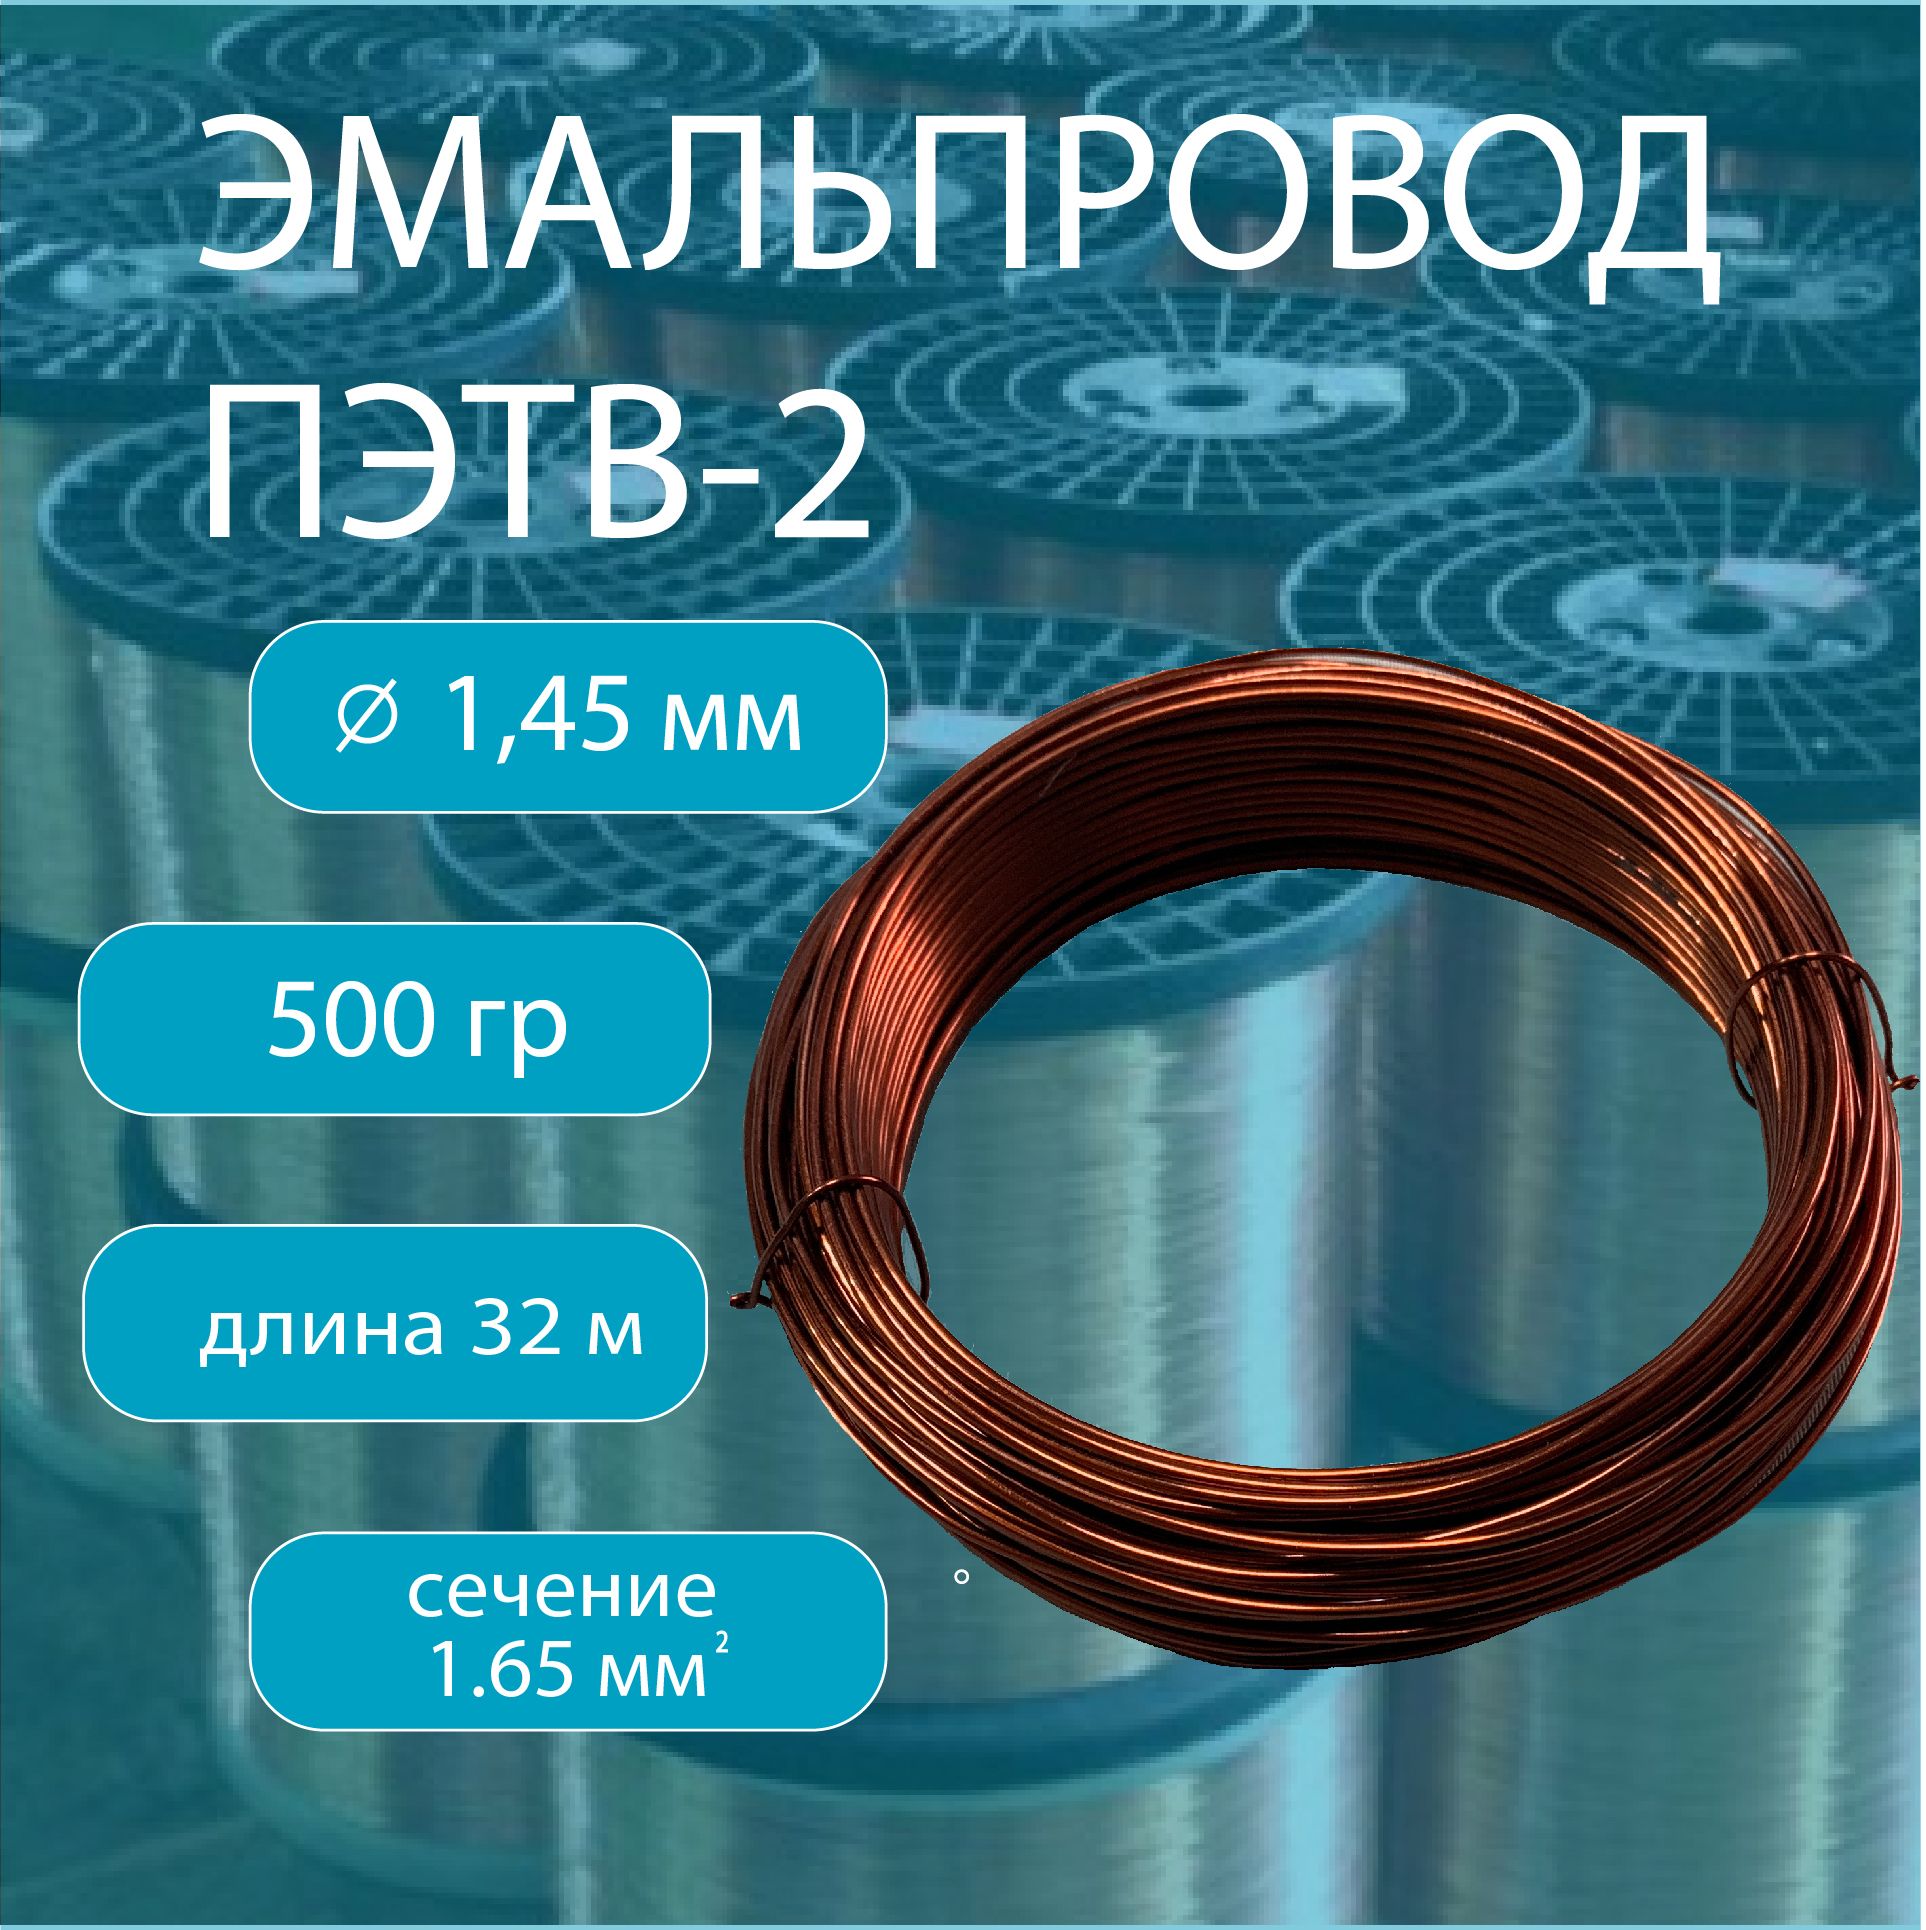 ОбмоточныйэмалированныйпроводПЭТВ-2,диаметр1,45мм,вес500гр